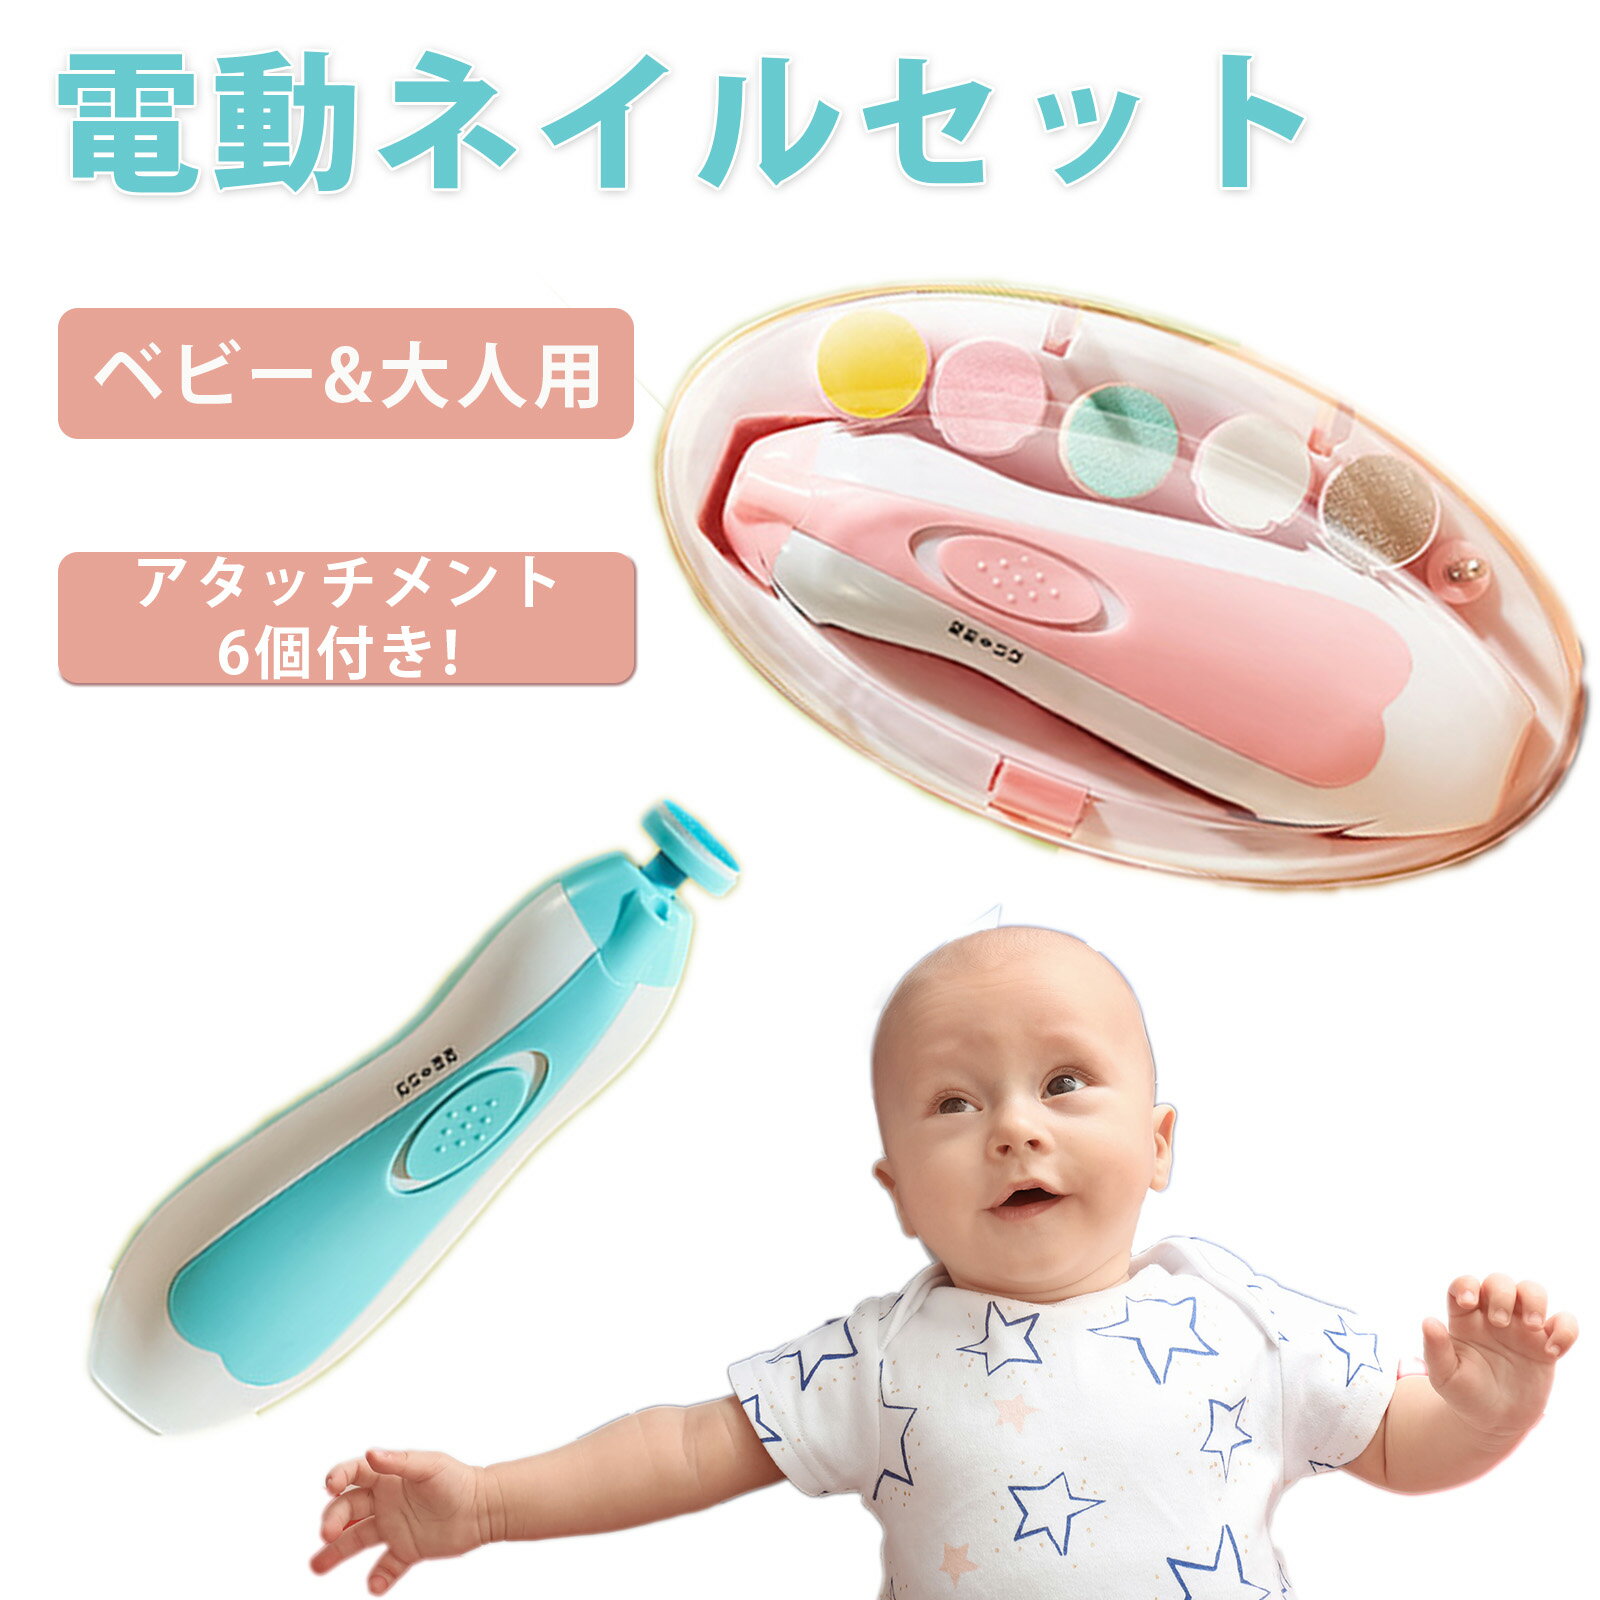 爪切り 電動 赤ちゃん ベビー 爪削り ネイルケア ネイルケア ネイルケアセット 赤ちゃん用 つめやすり 爪切り つめ切り つめきり つめけずり